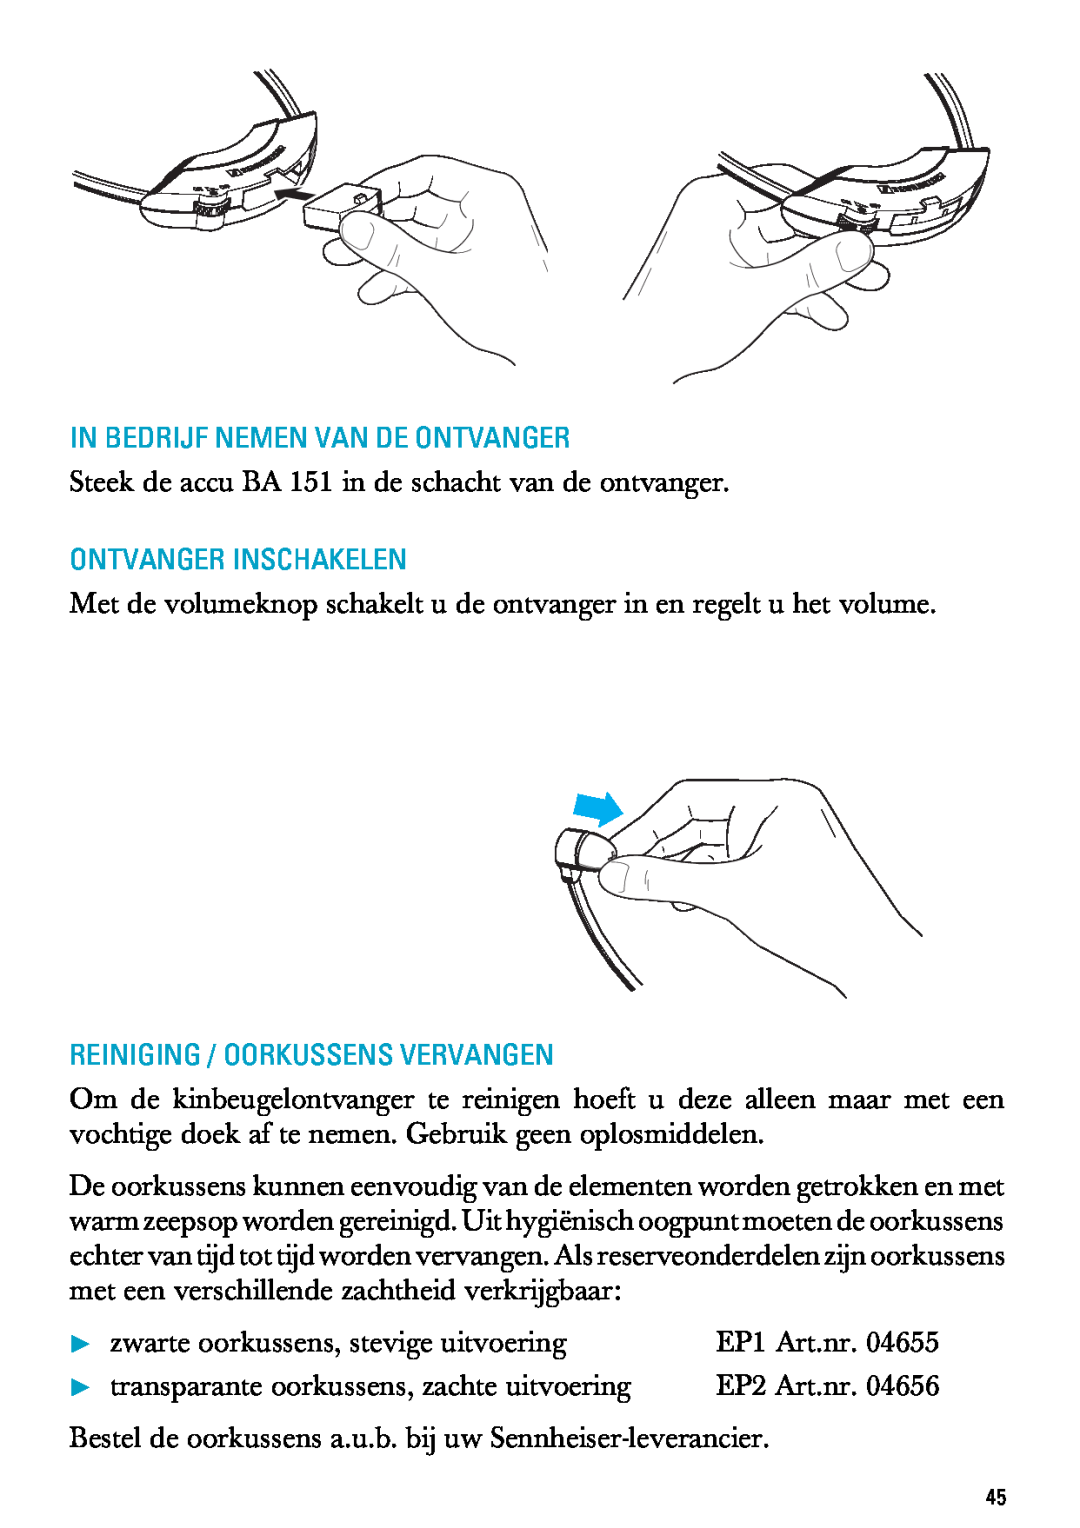 Sennheiser RI 300 manual In Bedrijf Nemen Van De Ontvanger, Ontvanger Inschakelen, Reiniging / Oorkussens Vervangen 